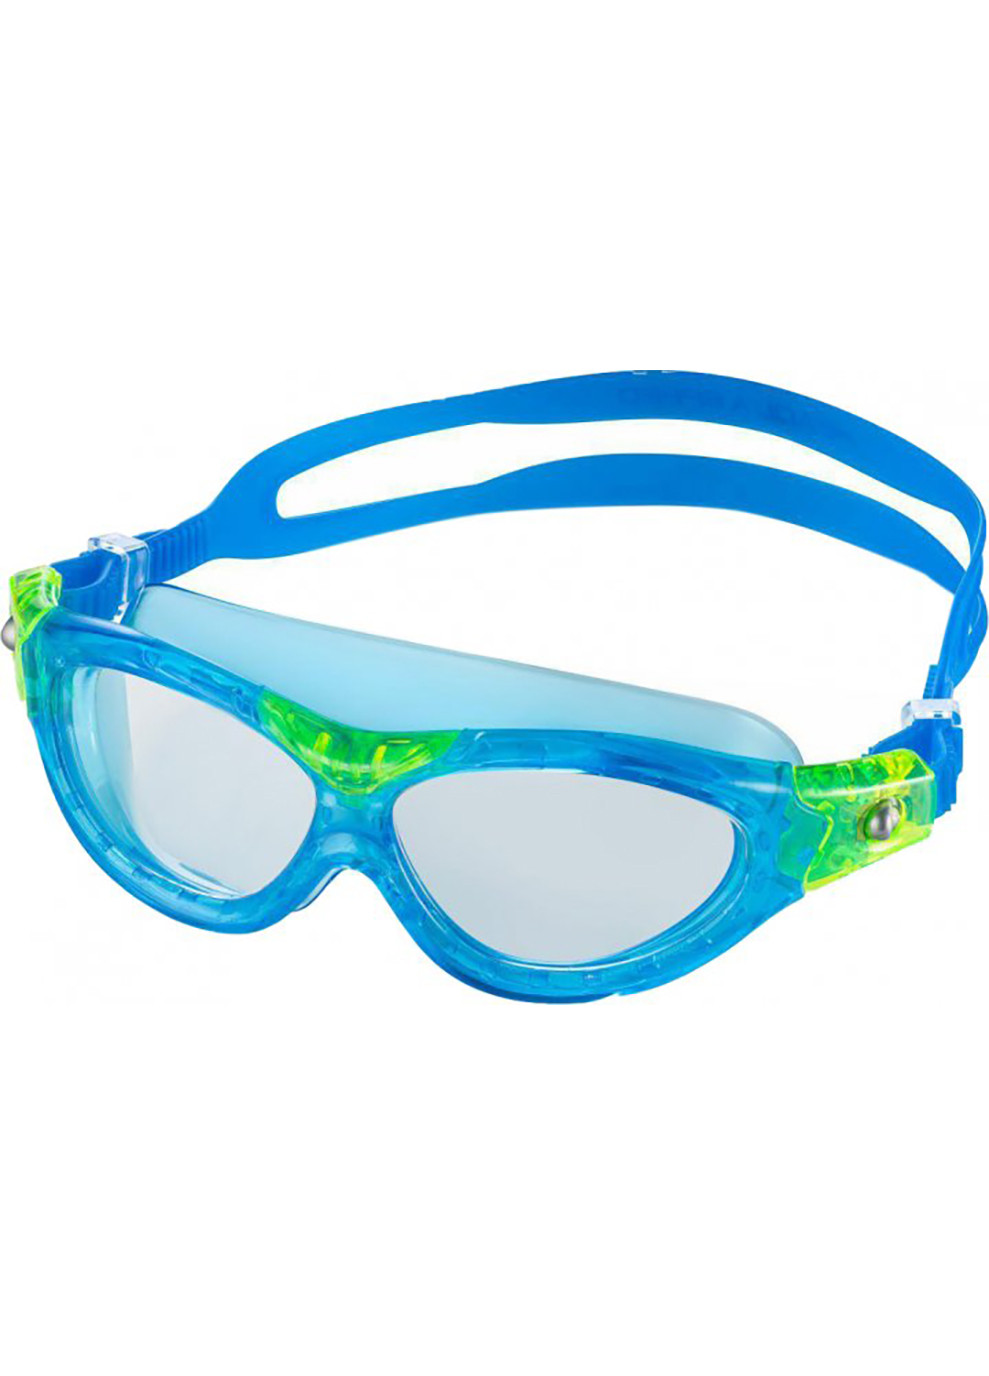 Очки для плавания MARIN KID 9020 голубые, зеленые OSFM 215-02 Aqua Speed (259215249)